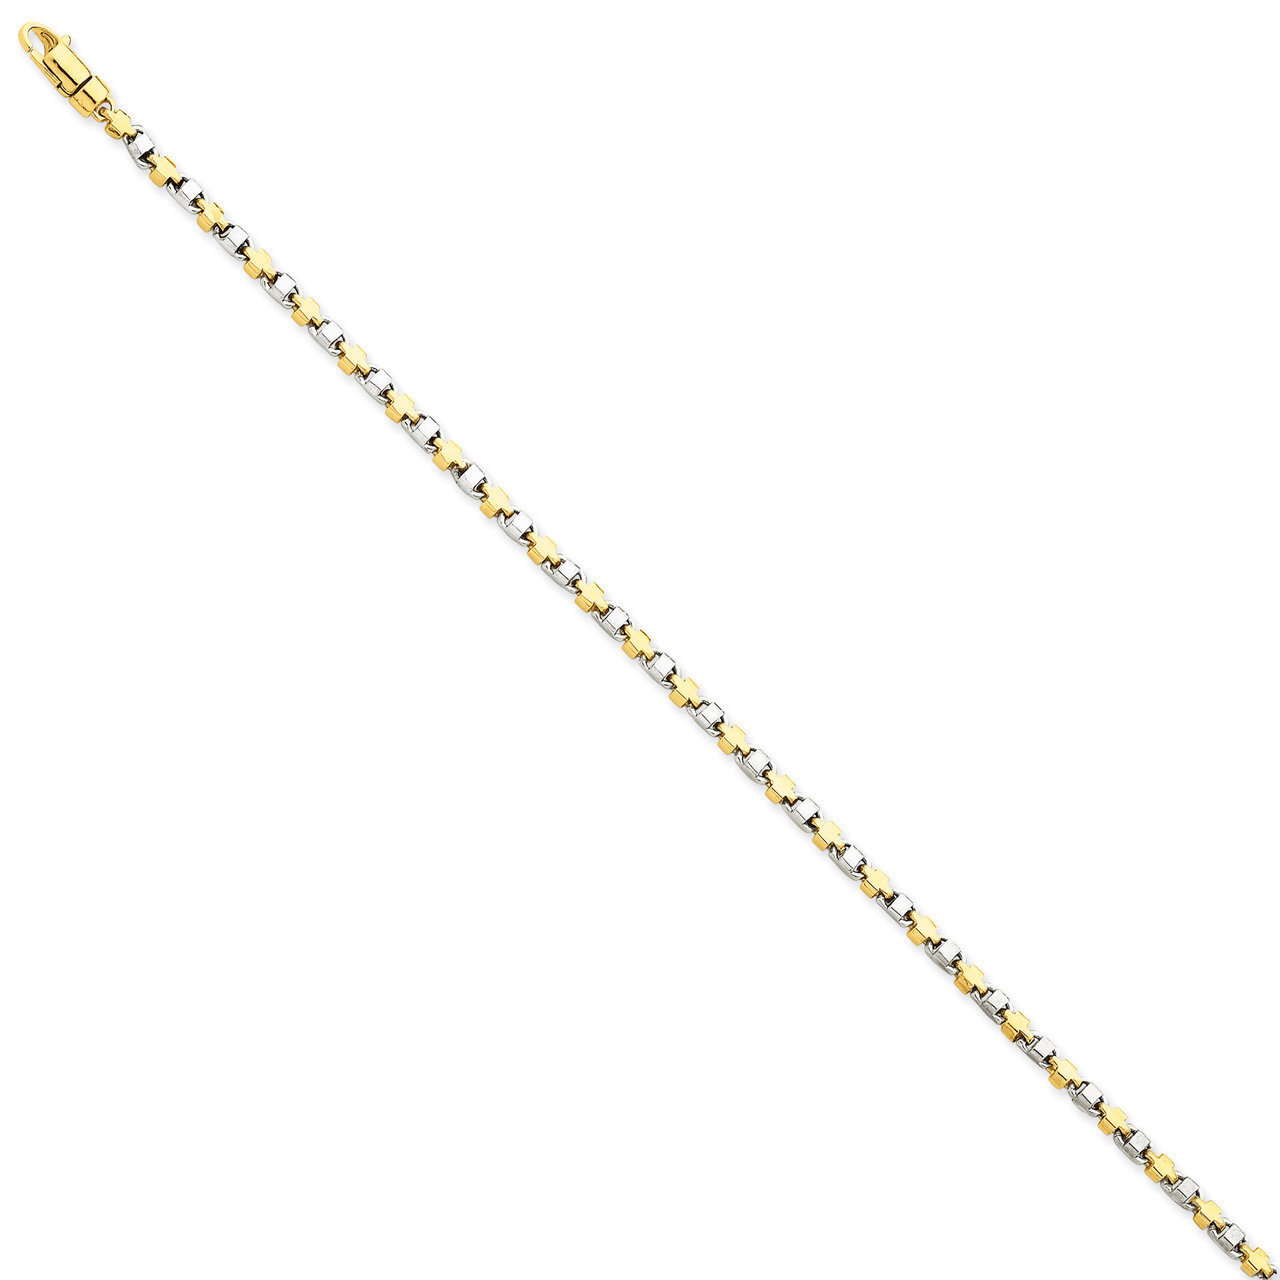 2.5mm Fancy Link Chain 18 Inch 14k Two-Tone Gold LK695-18